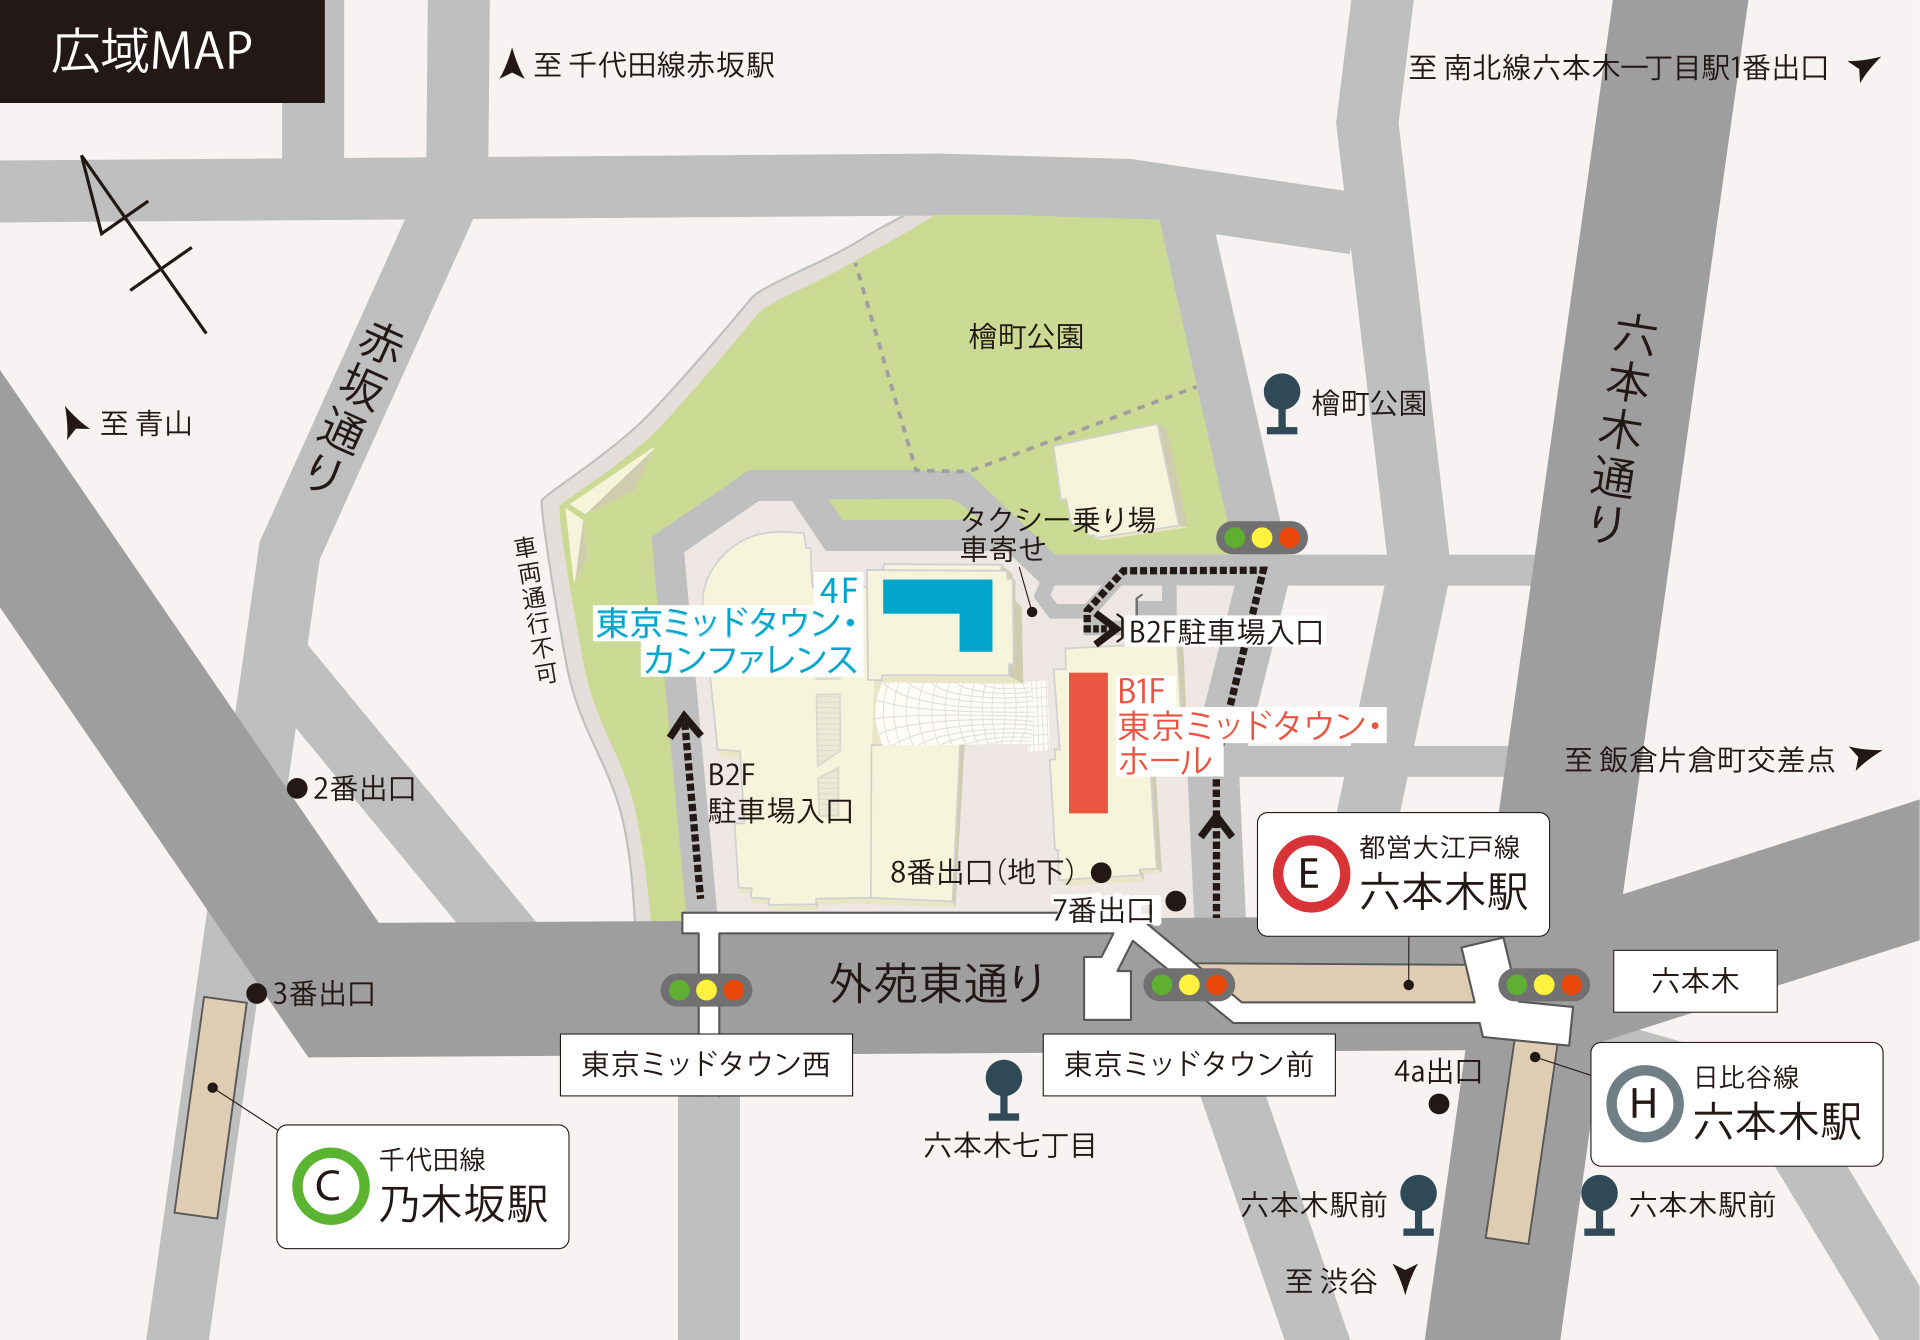 東京ミッドタウン ホール&カンファレンス アクセスマップ